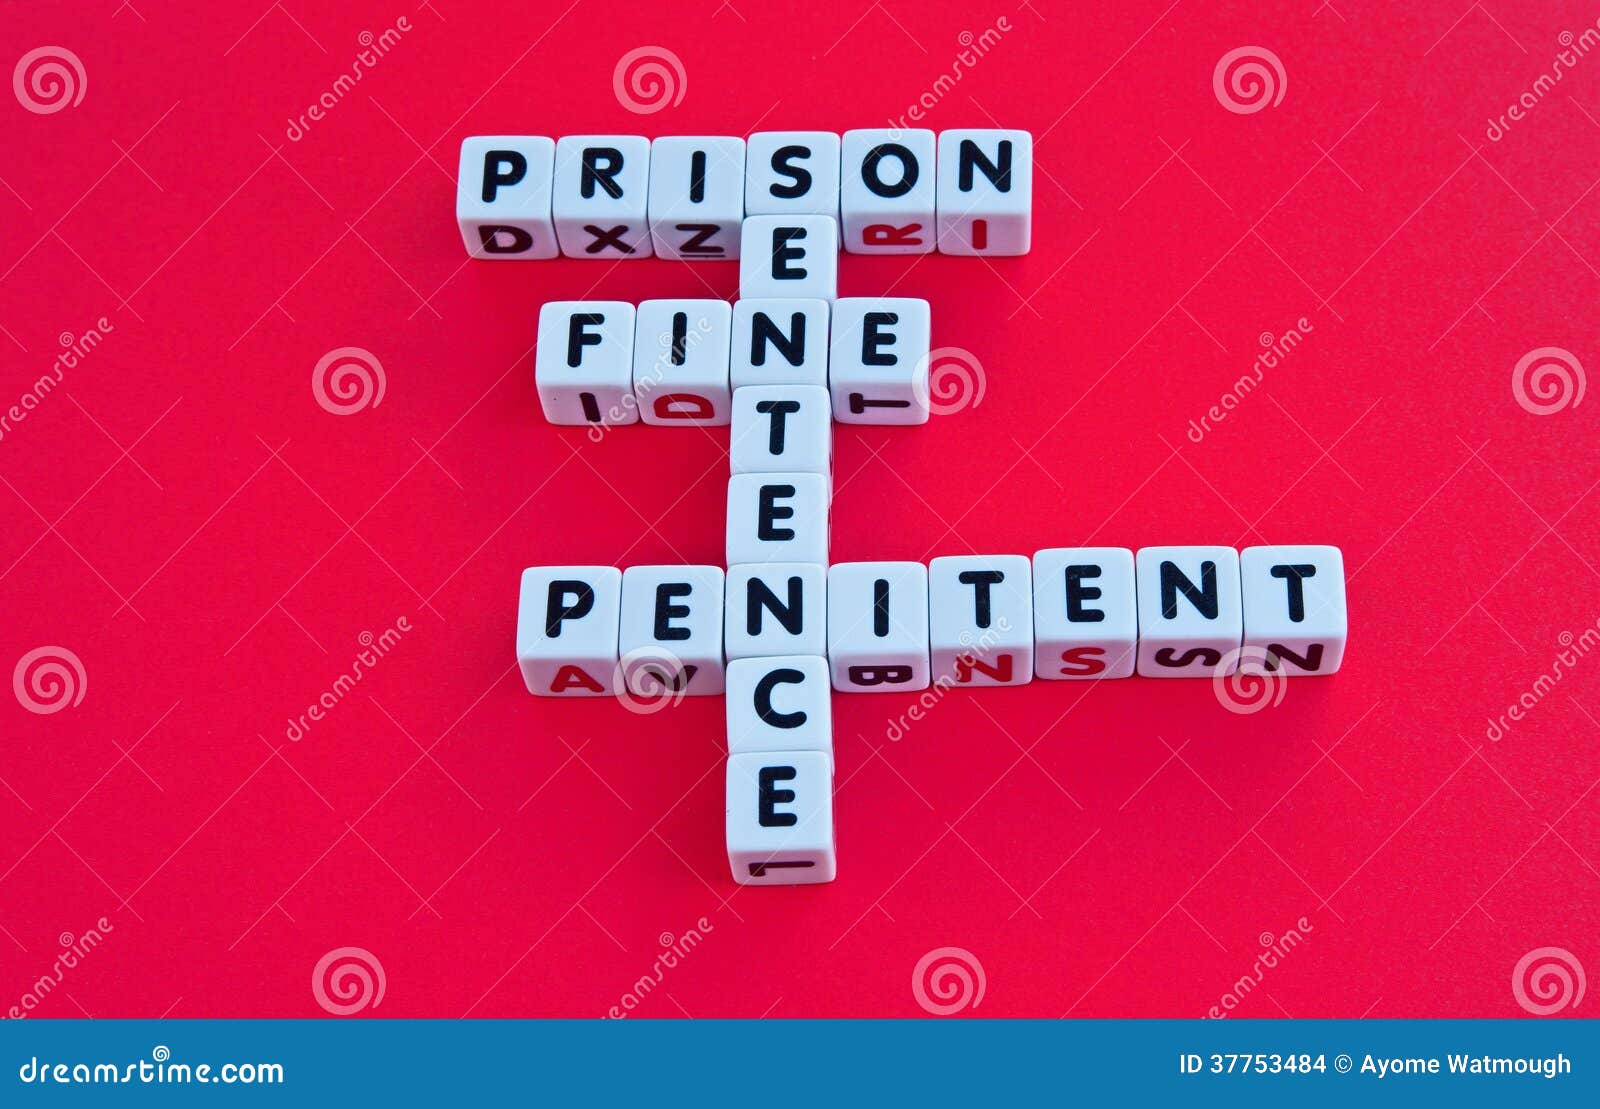 prison sentence